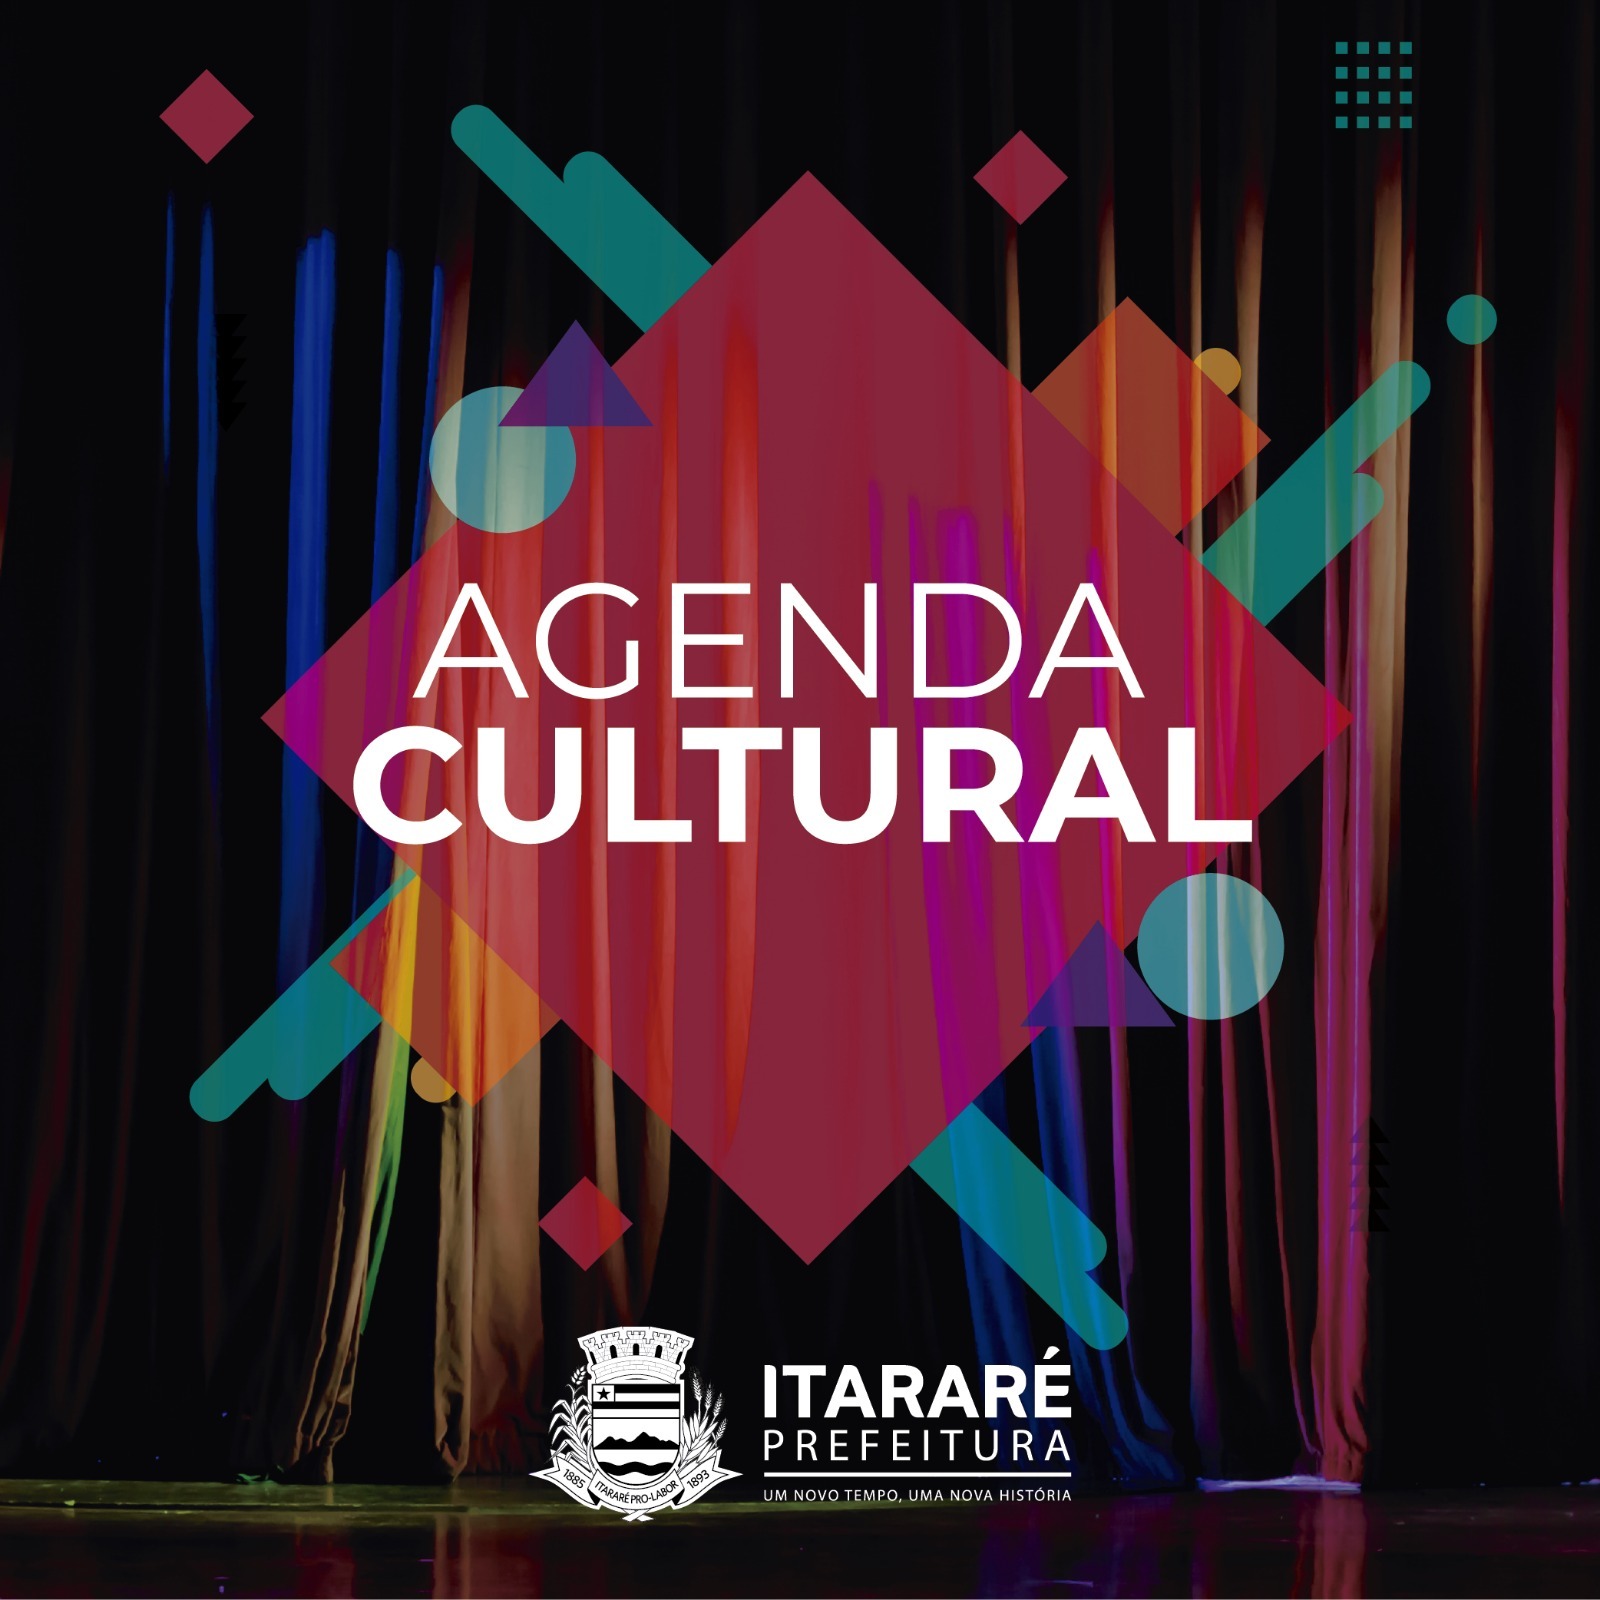 Agenda Cultural: Seguem as comemorações ao aniversário de 125 anos de Itararé (SP)